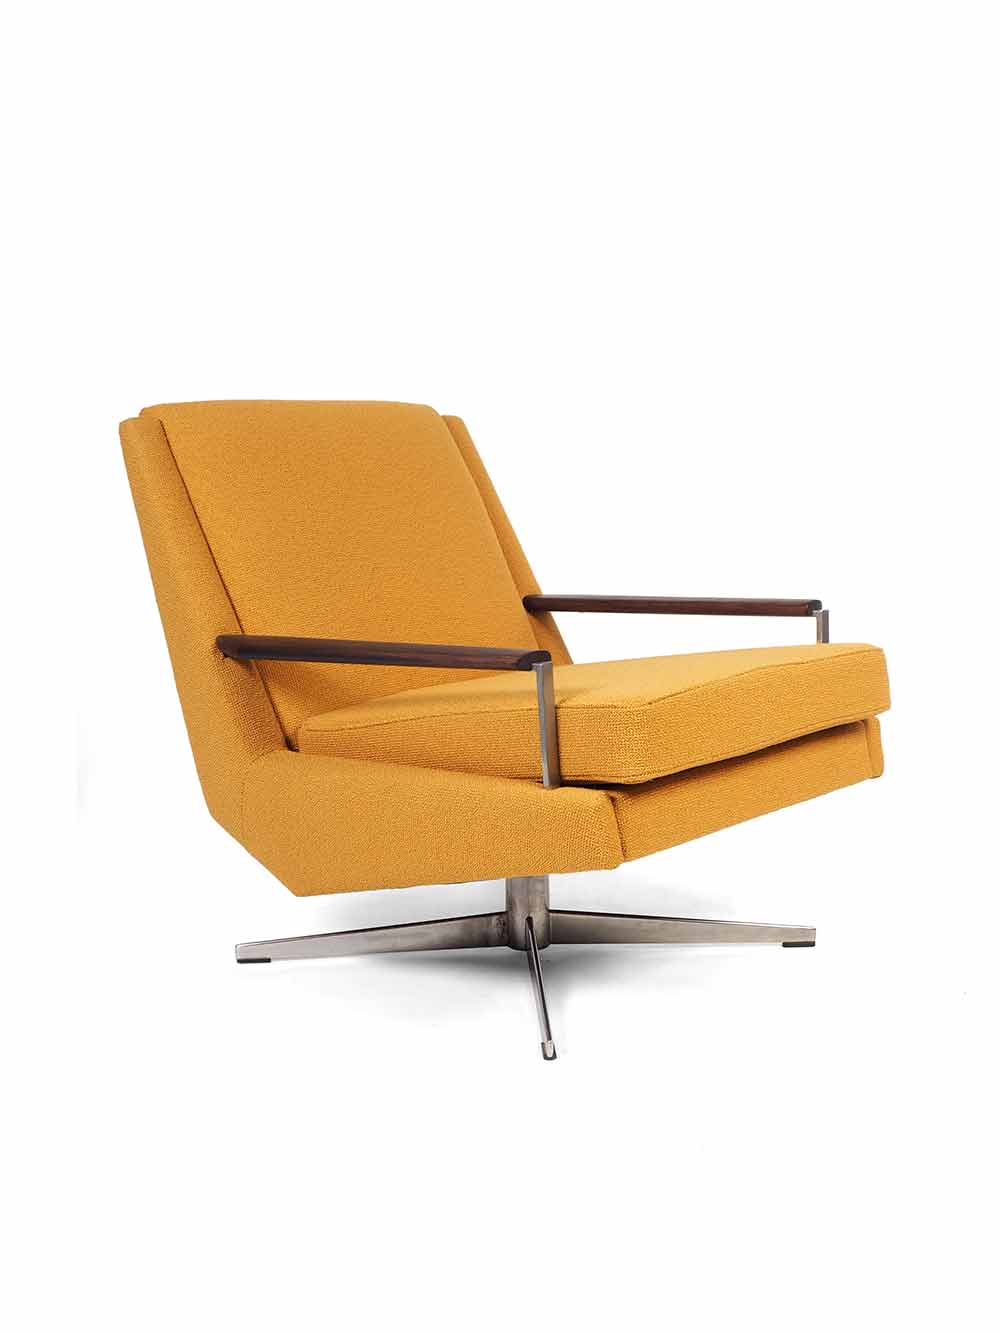 Gele lounge stoel jaren zestig